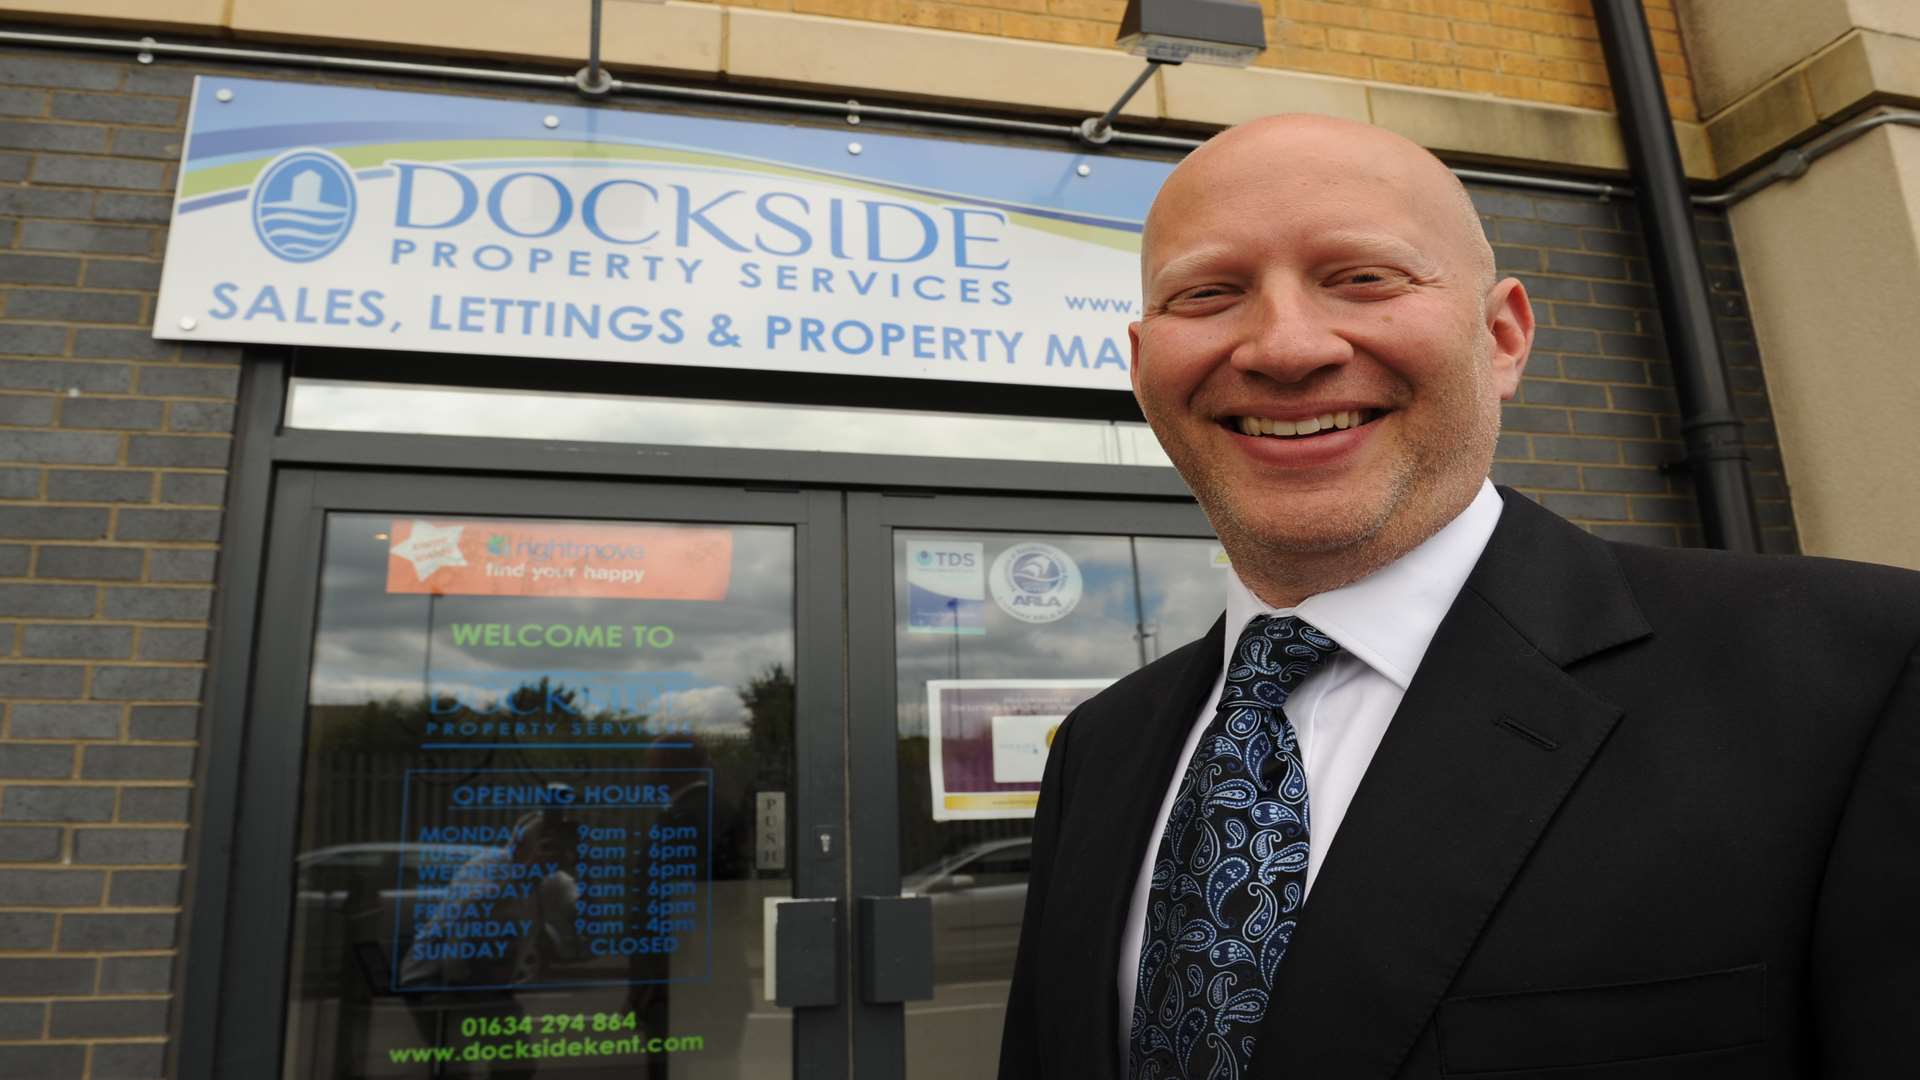 Dockside Property Services managing director Spencer Fortag